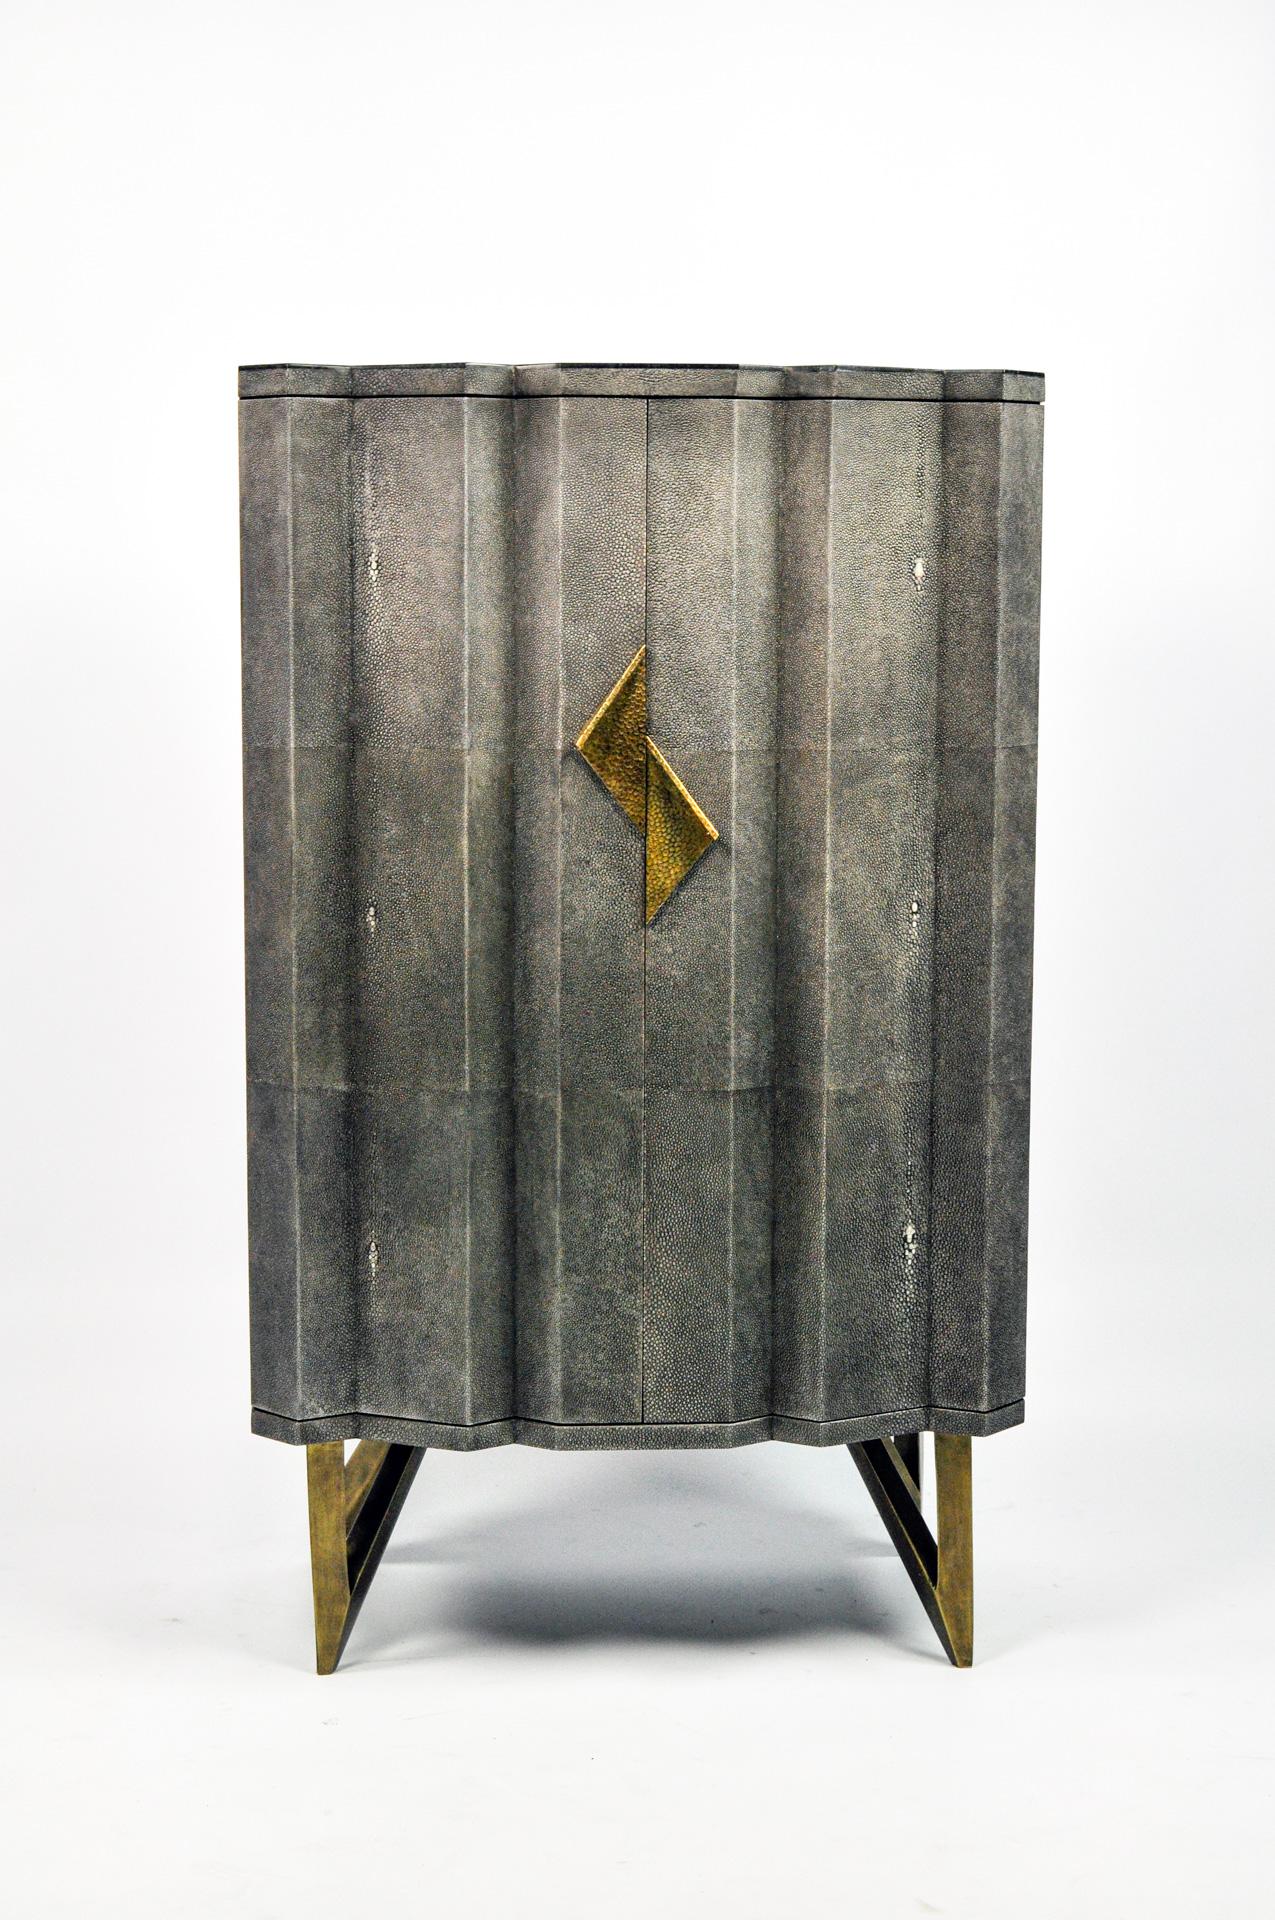 Ce meuble a deux portes et il est fait de marqueterie de pierre noire sur le dessus et les côtés. Les portes sont en galuchat de couleur gris foncé, avec des poignées en laiton moulé.
Les pieds sont en métal avec une patine bronze.

L'intérieur